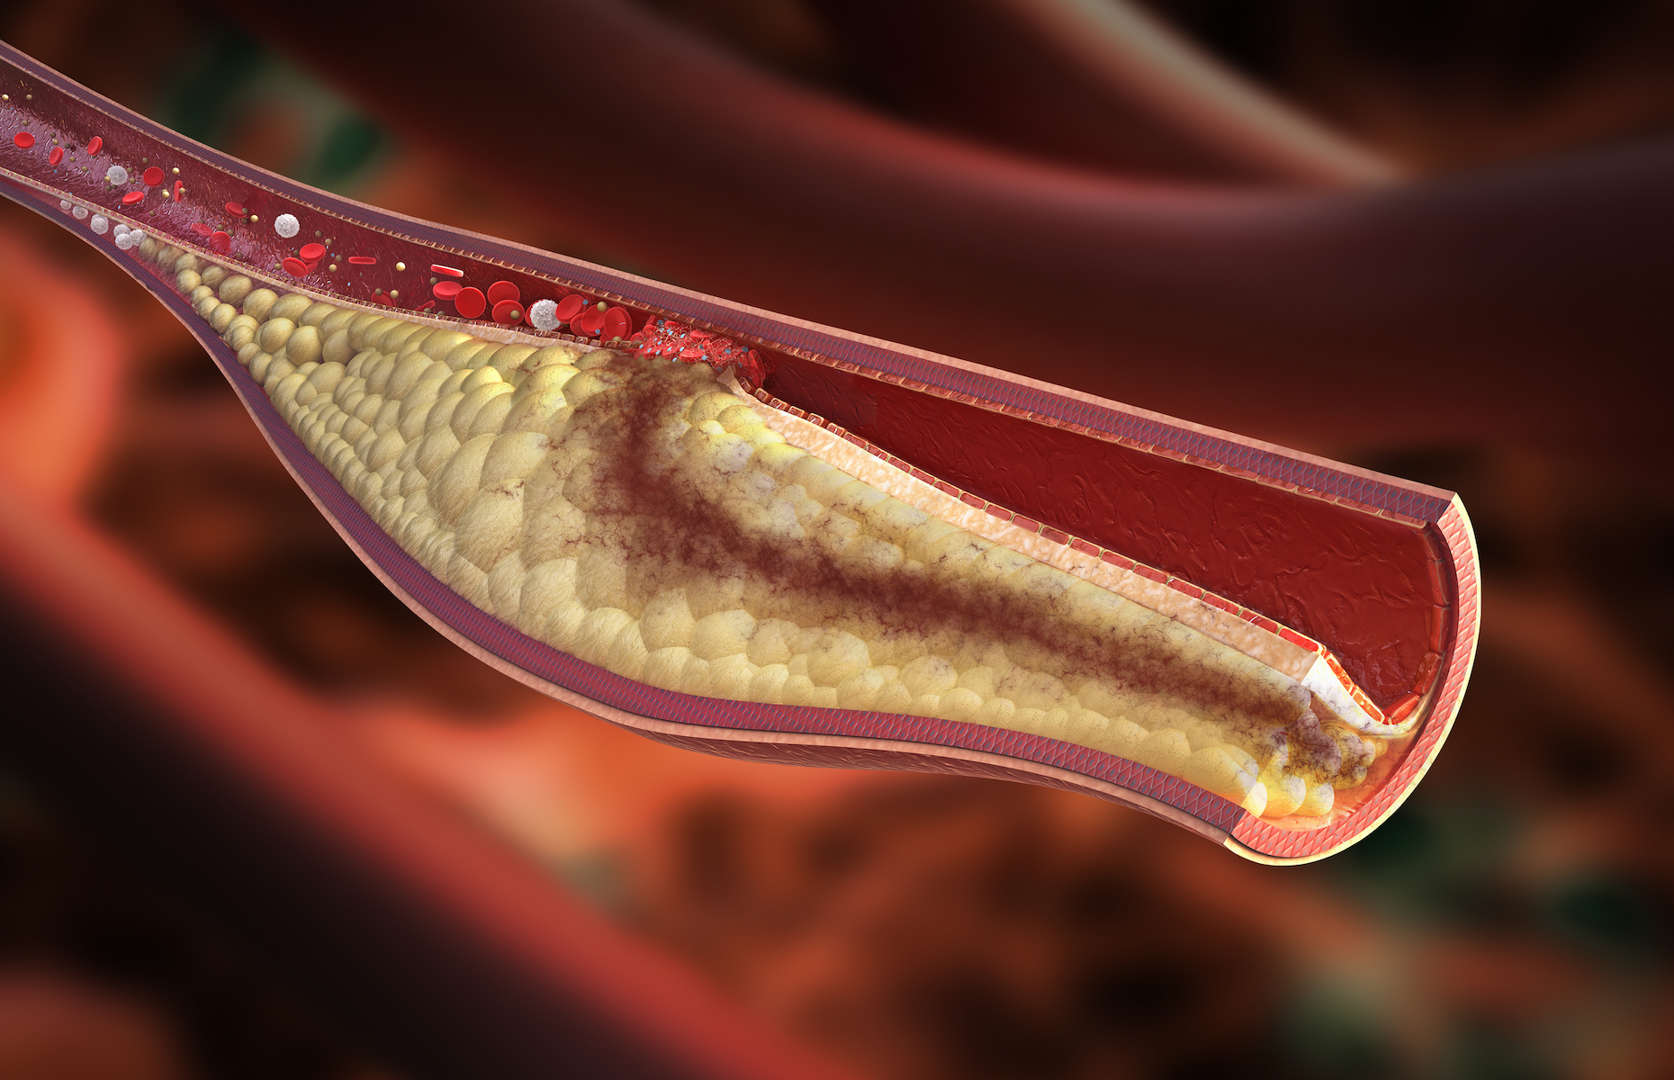 20 svarbių faktų, kuriuos reikia žinoti apie cholesterolį. Kuo skiriasi blogasis ir gerasis cholesterolis?